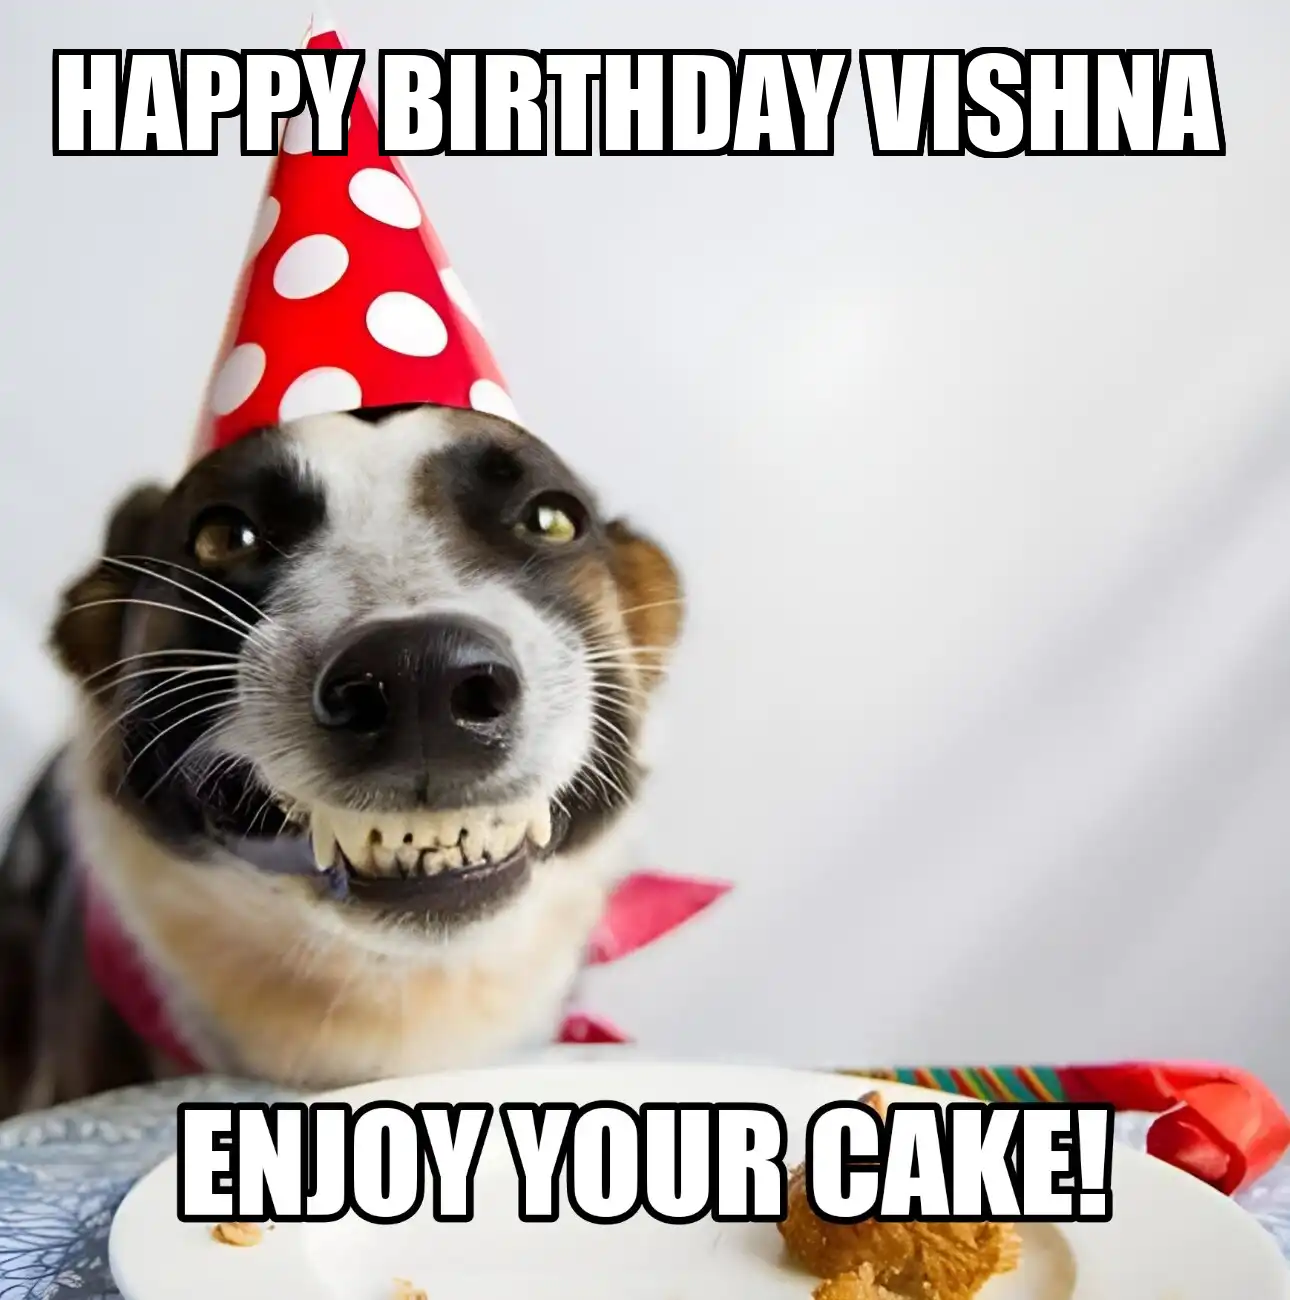 Happy Birthday Vishna Enjoy Your Cake Dog Meme